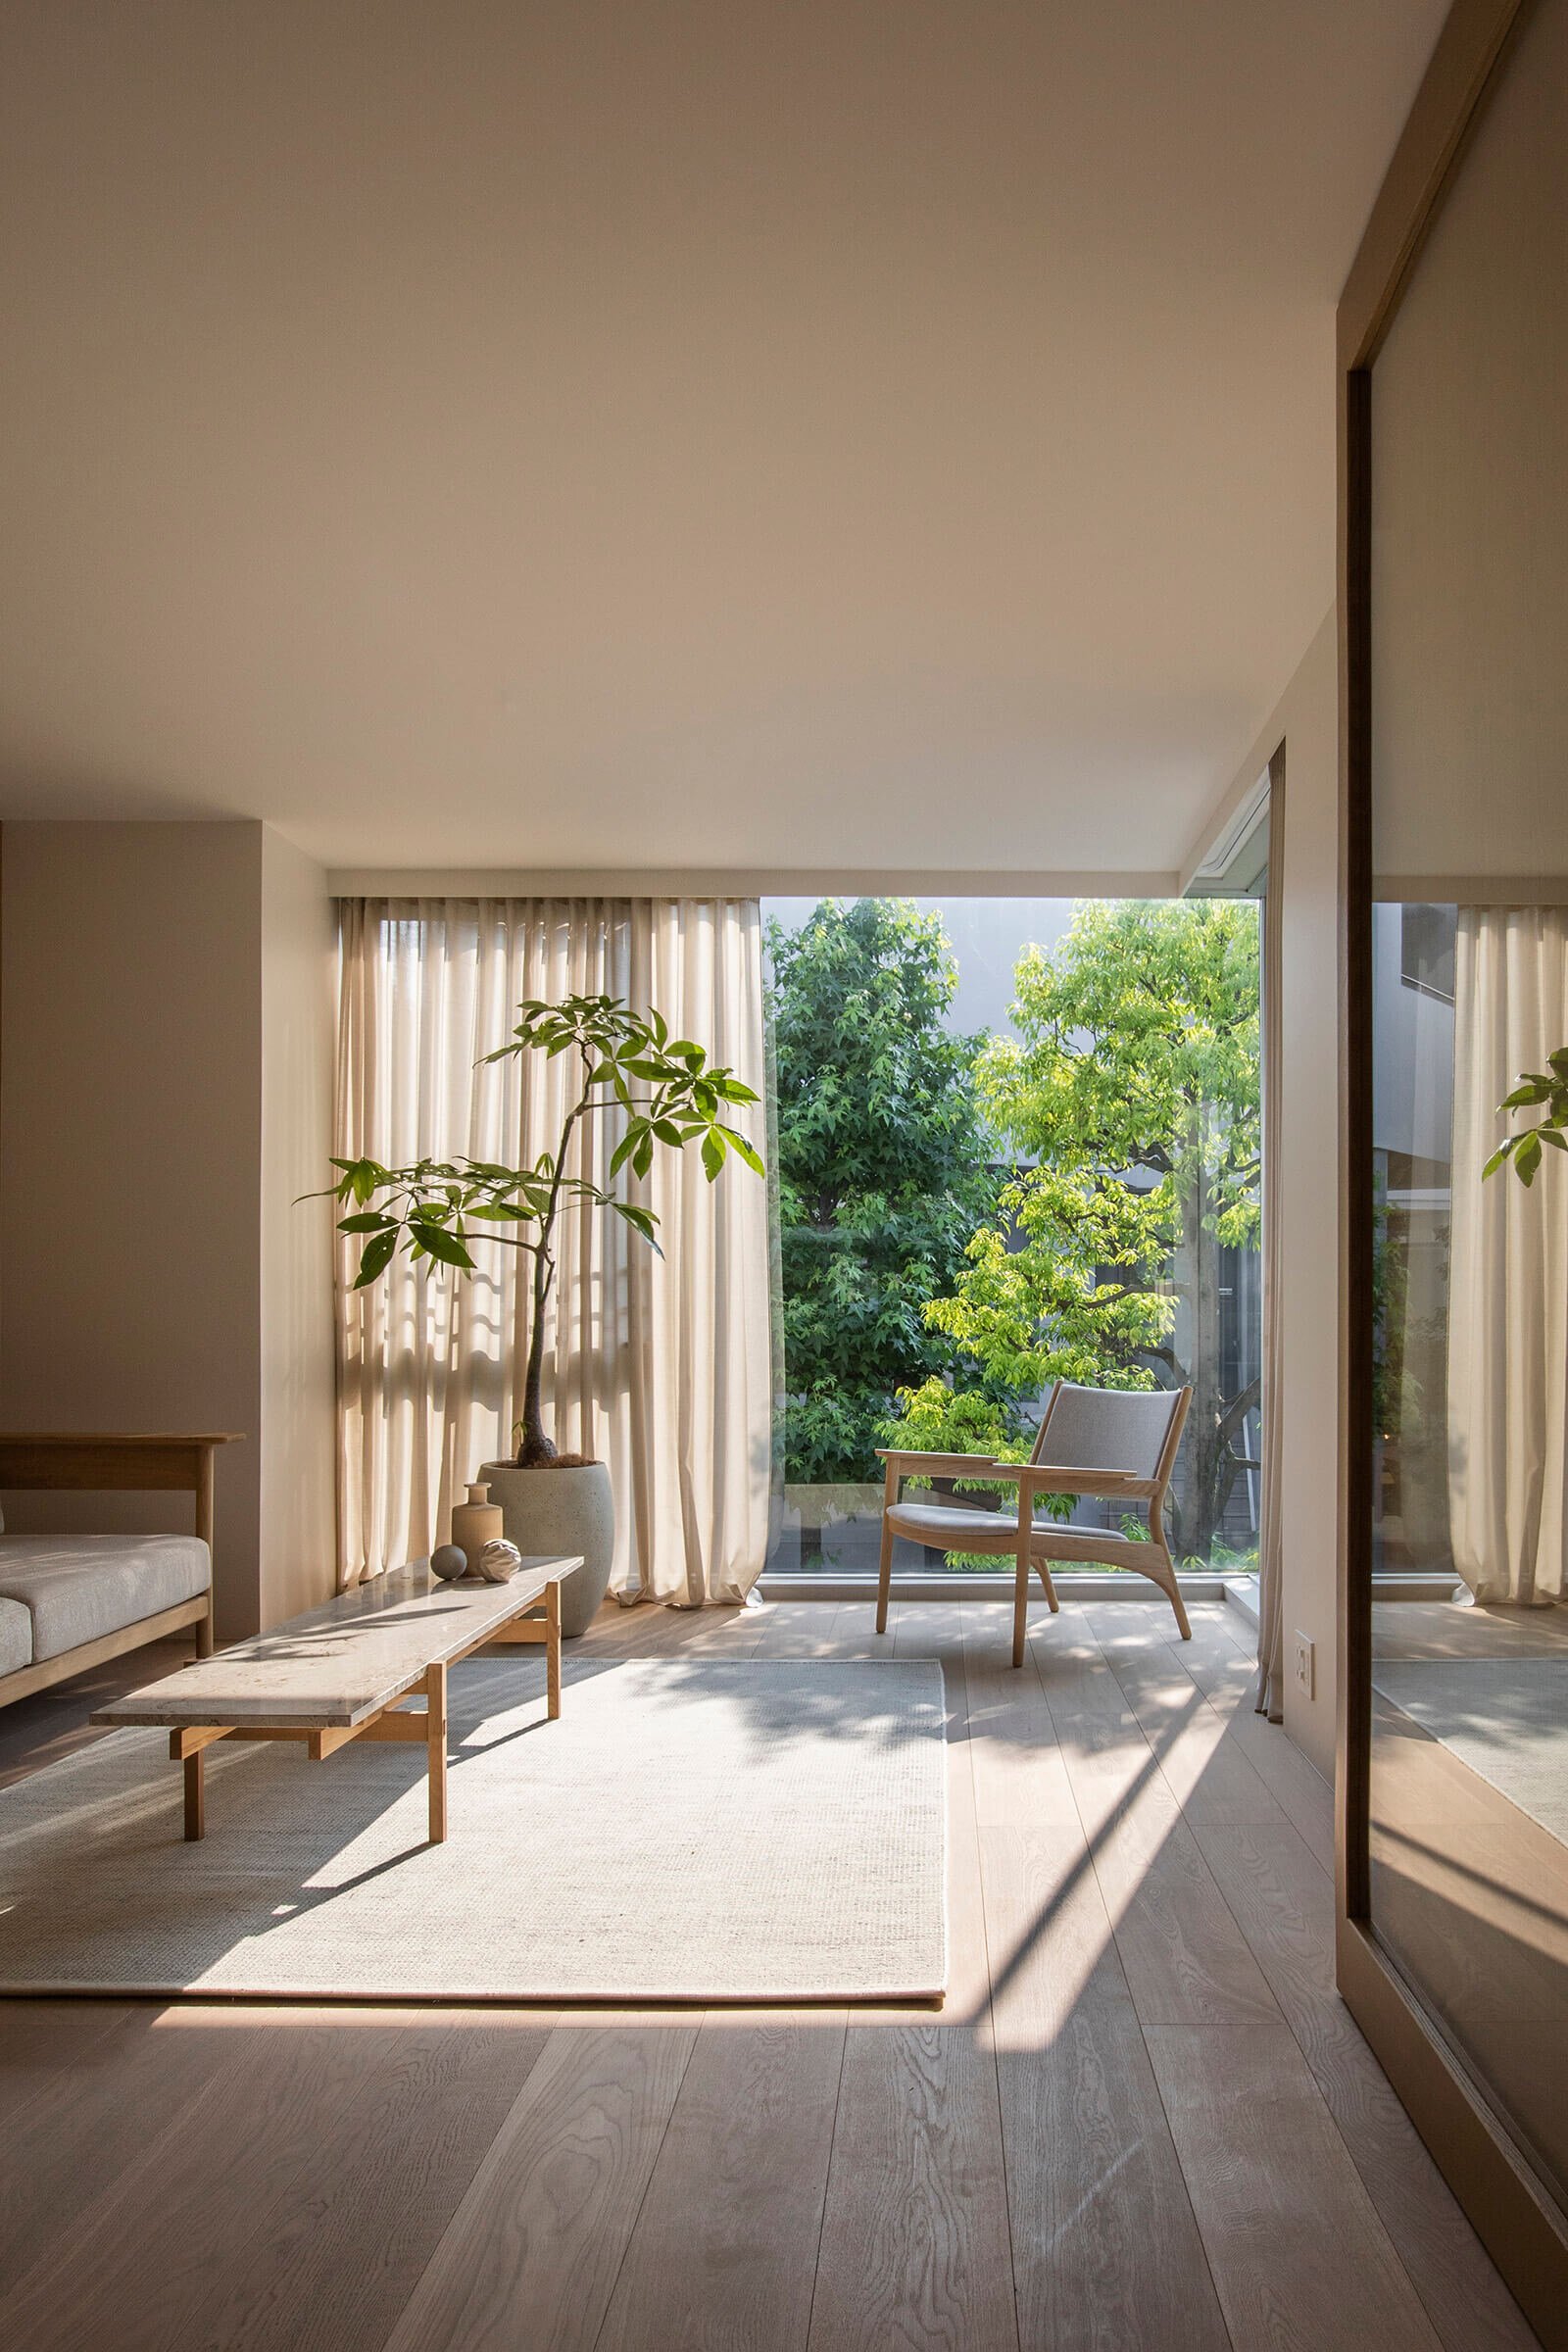 keiji-ashizawa-design-kinuta-terrace-tokyo-japan-residence-interior-design-idreit-4170.jpg